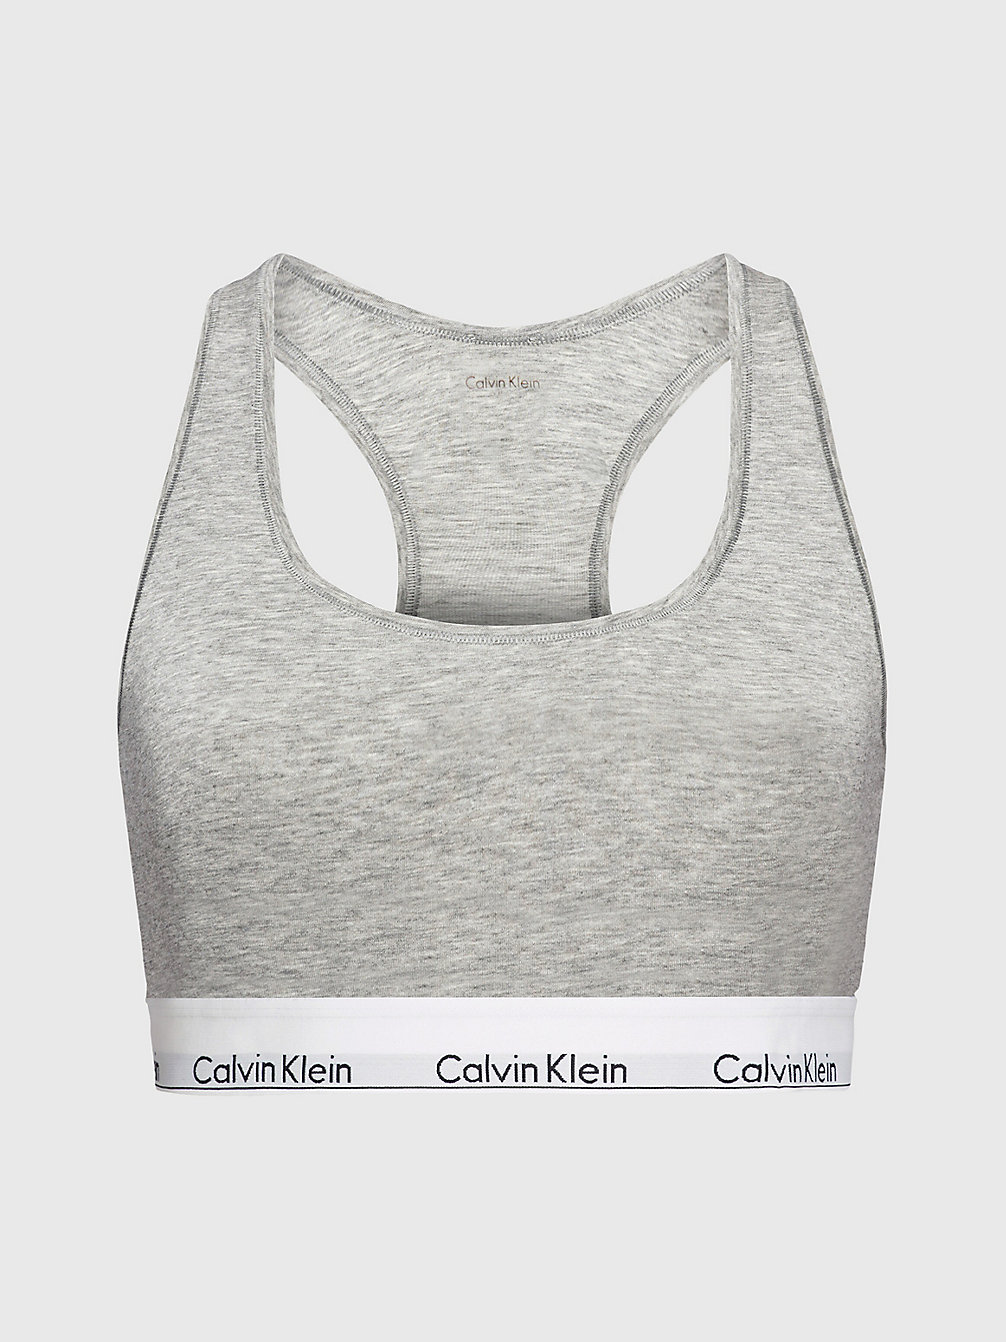 GREY HEATHER > Бралетт плюс-сайз – Modern Cotton > undefined Женщины - Calvin Klein